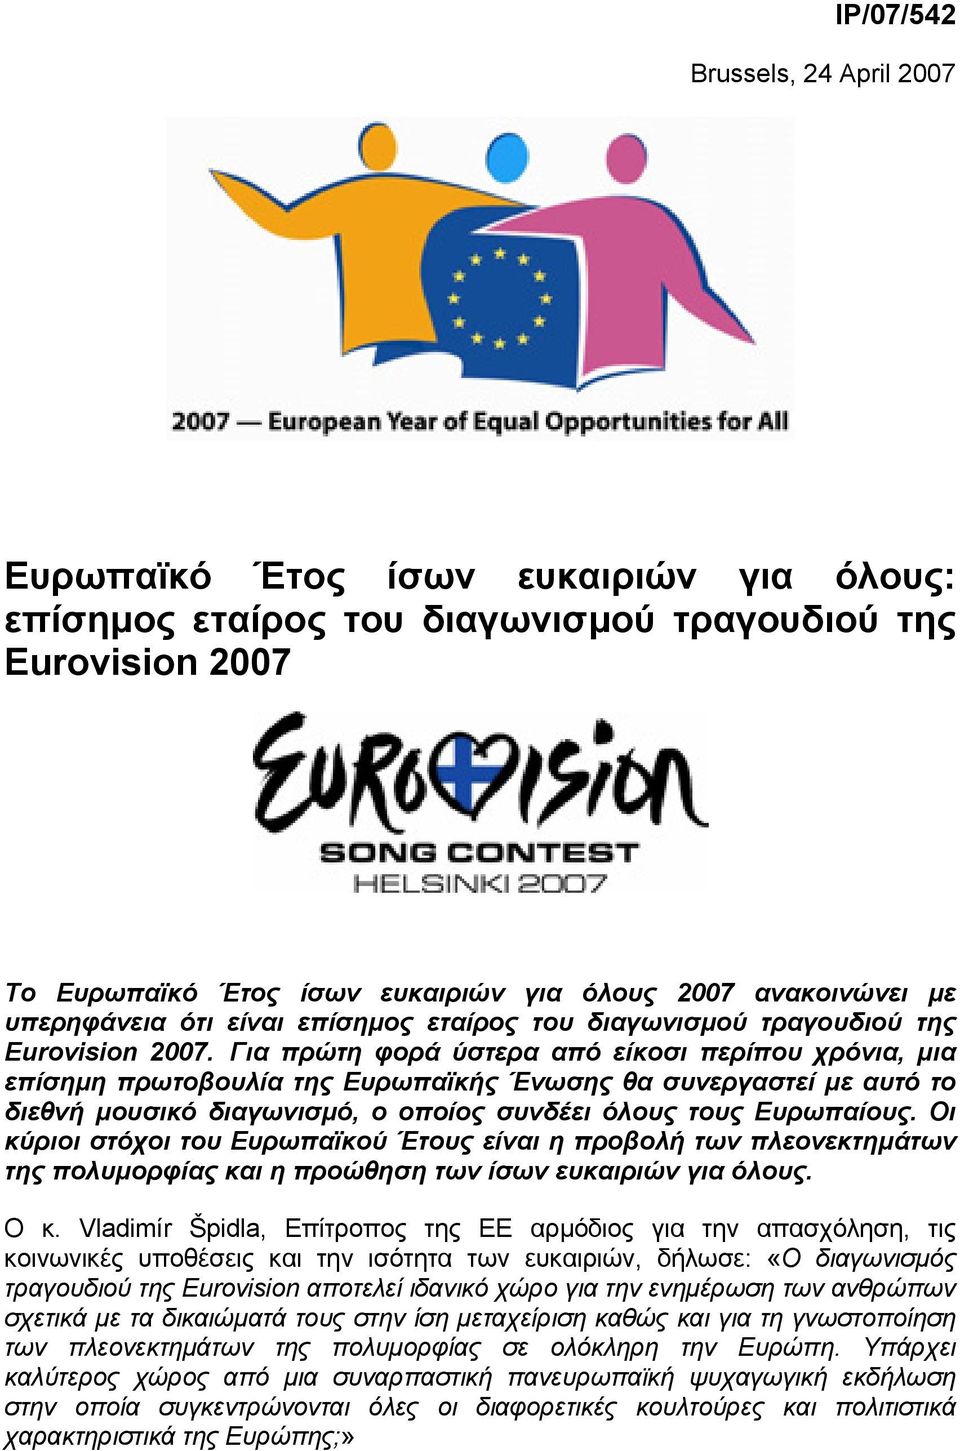 Για πρώτη φορά ύστερα από είκοσι περίπου χρόνια, µια επίσηµη πρωτοβουλία της Ευρωπαϊκής Ένωσης θα συνεργαστεί µε αυτό το διεθνή µουσικό διαγωνισµό, ο οποίος συνδέει όλους τους Ευρωπαίους.